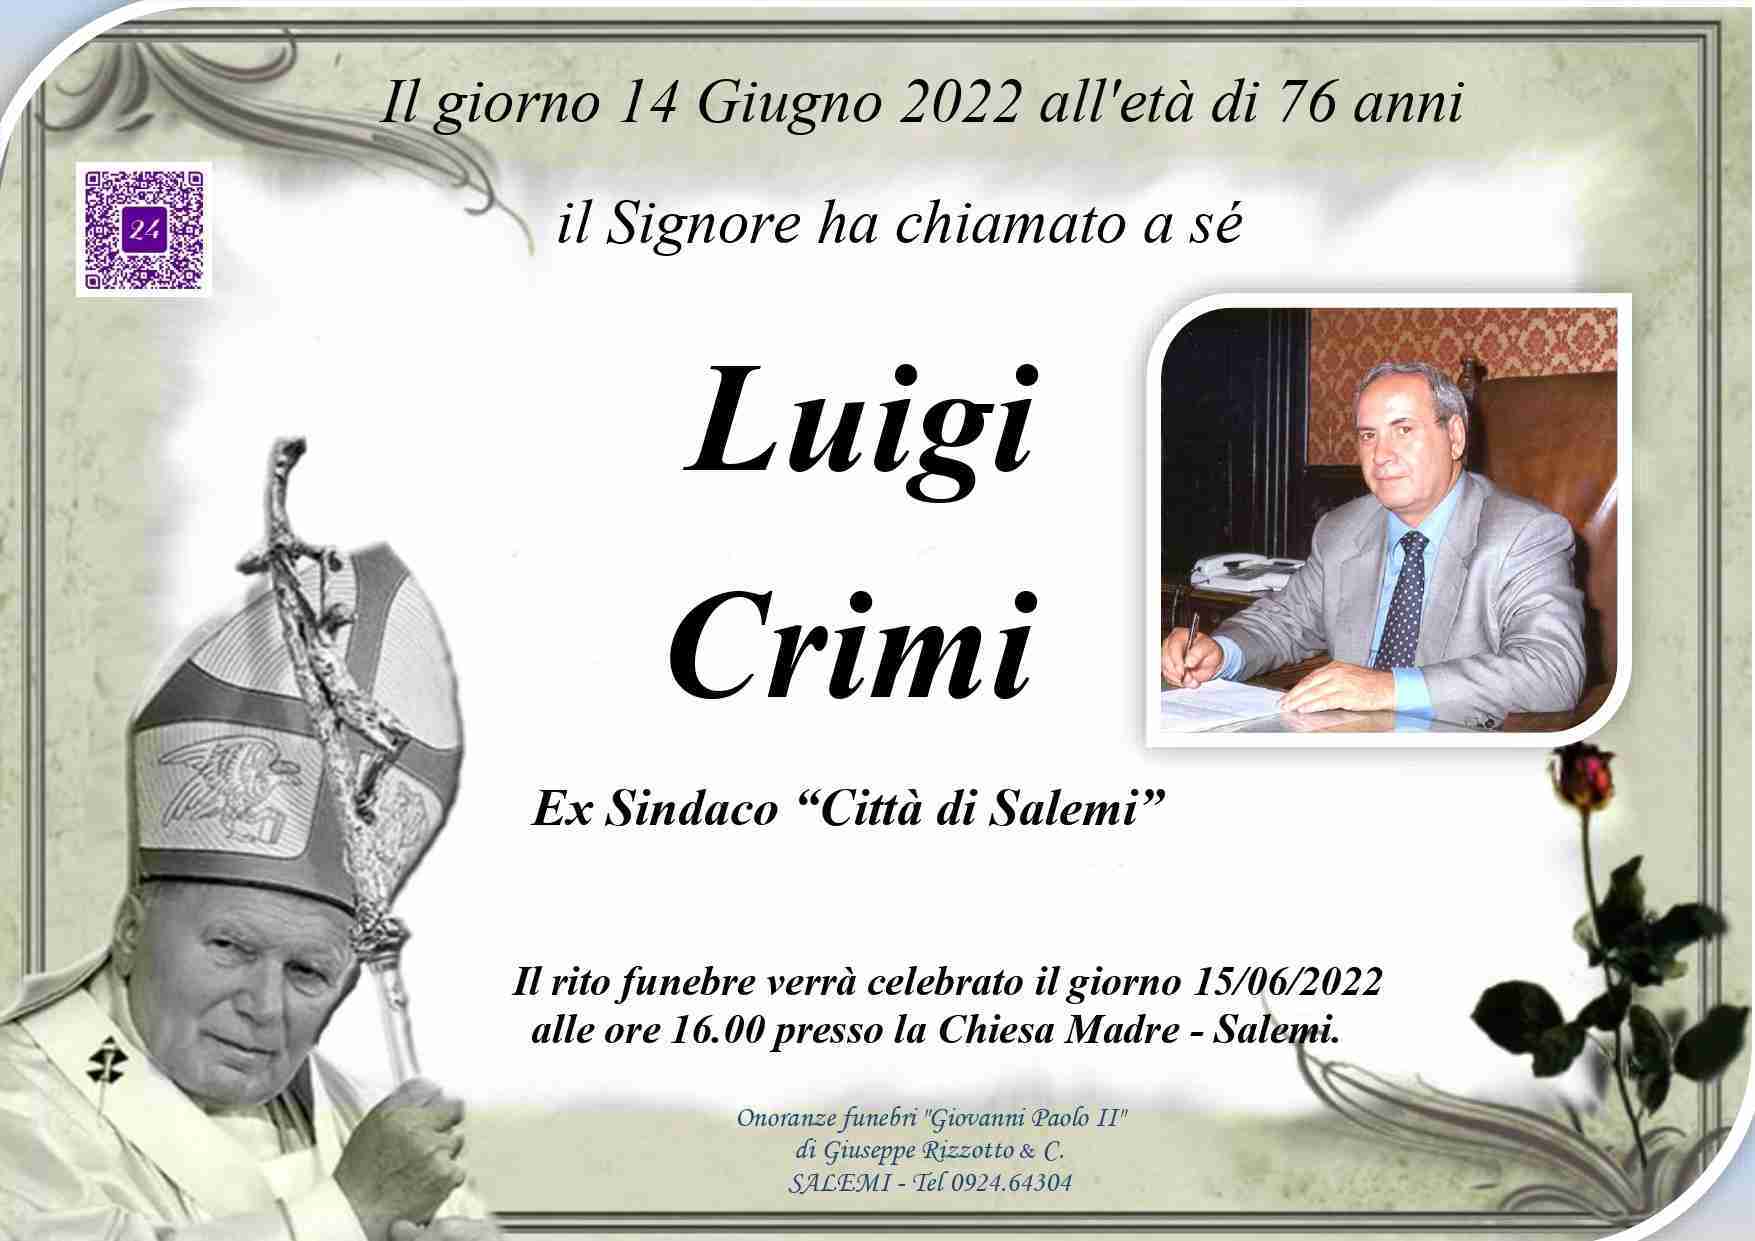 Luigi Crimi